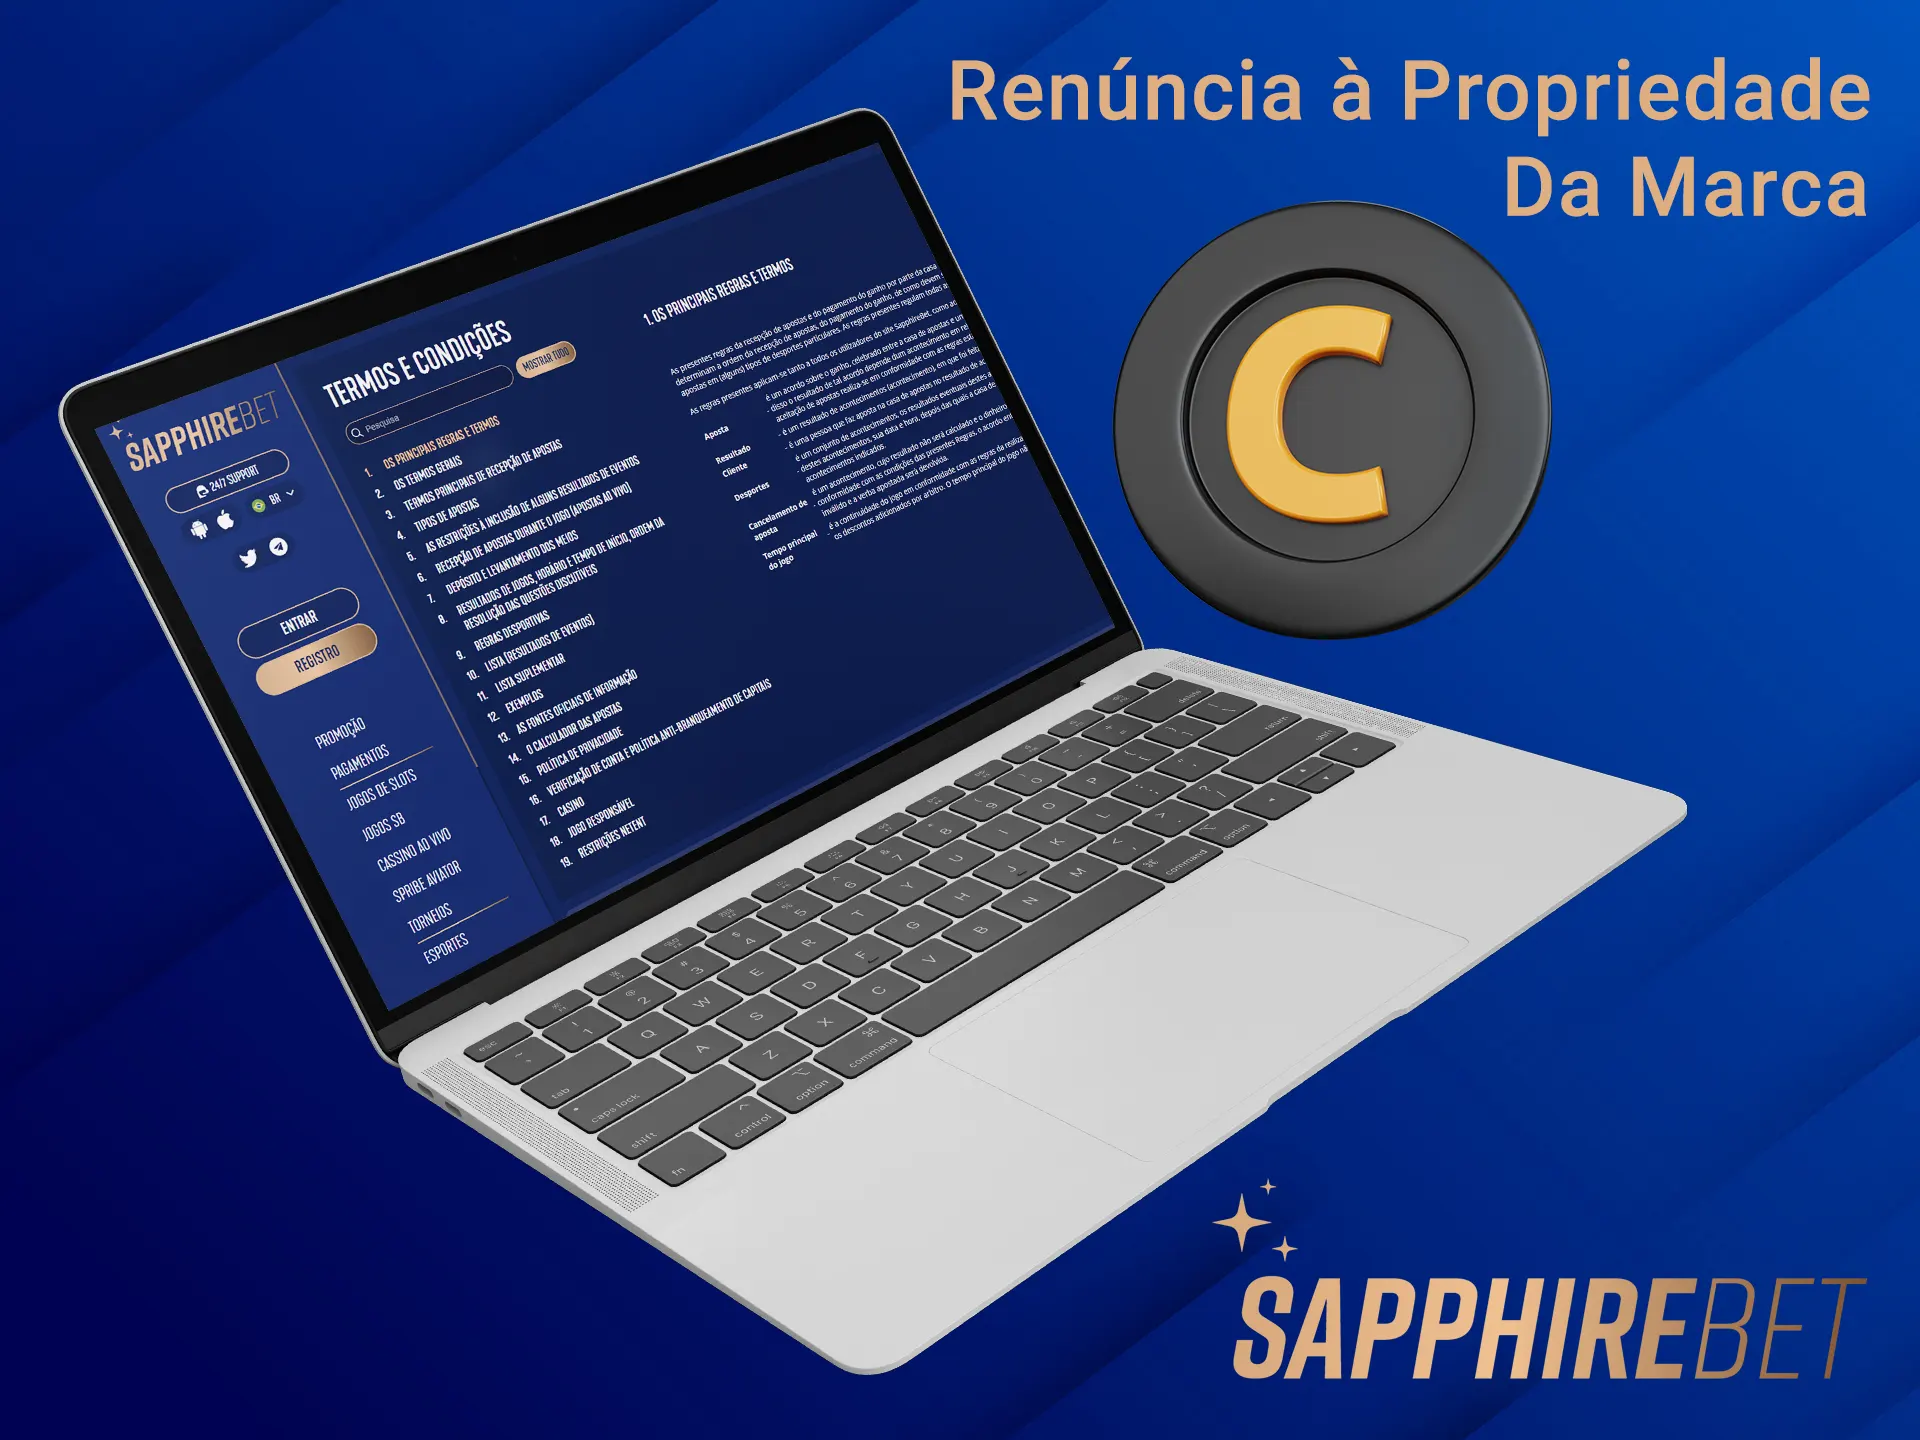 A Sapphirebet tem todas as suas próprias marcas registradas.